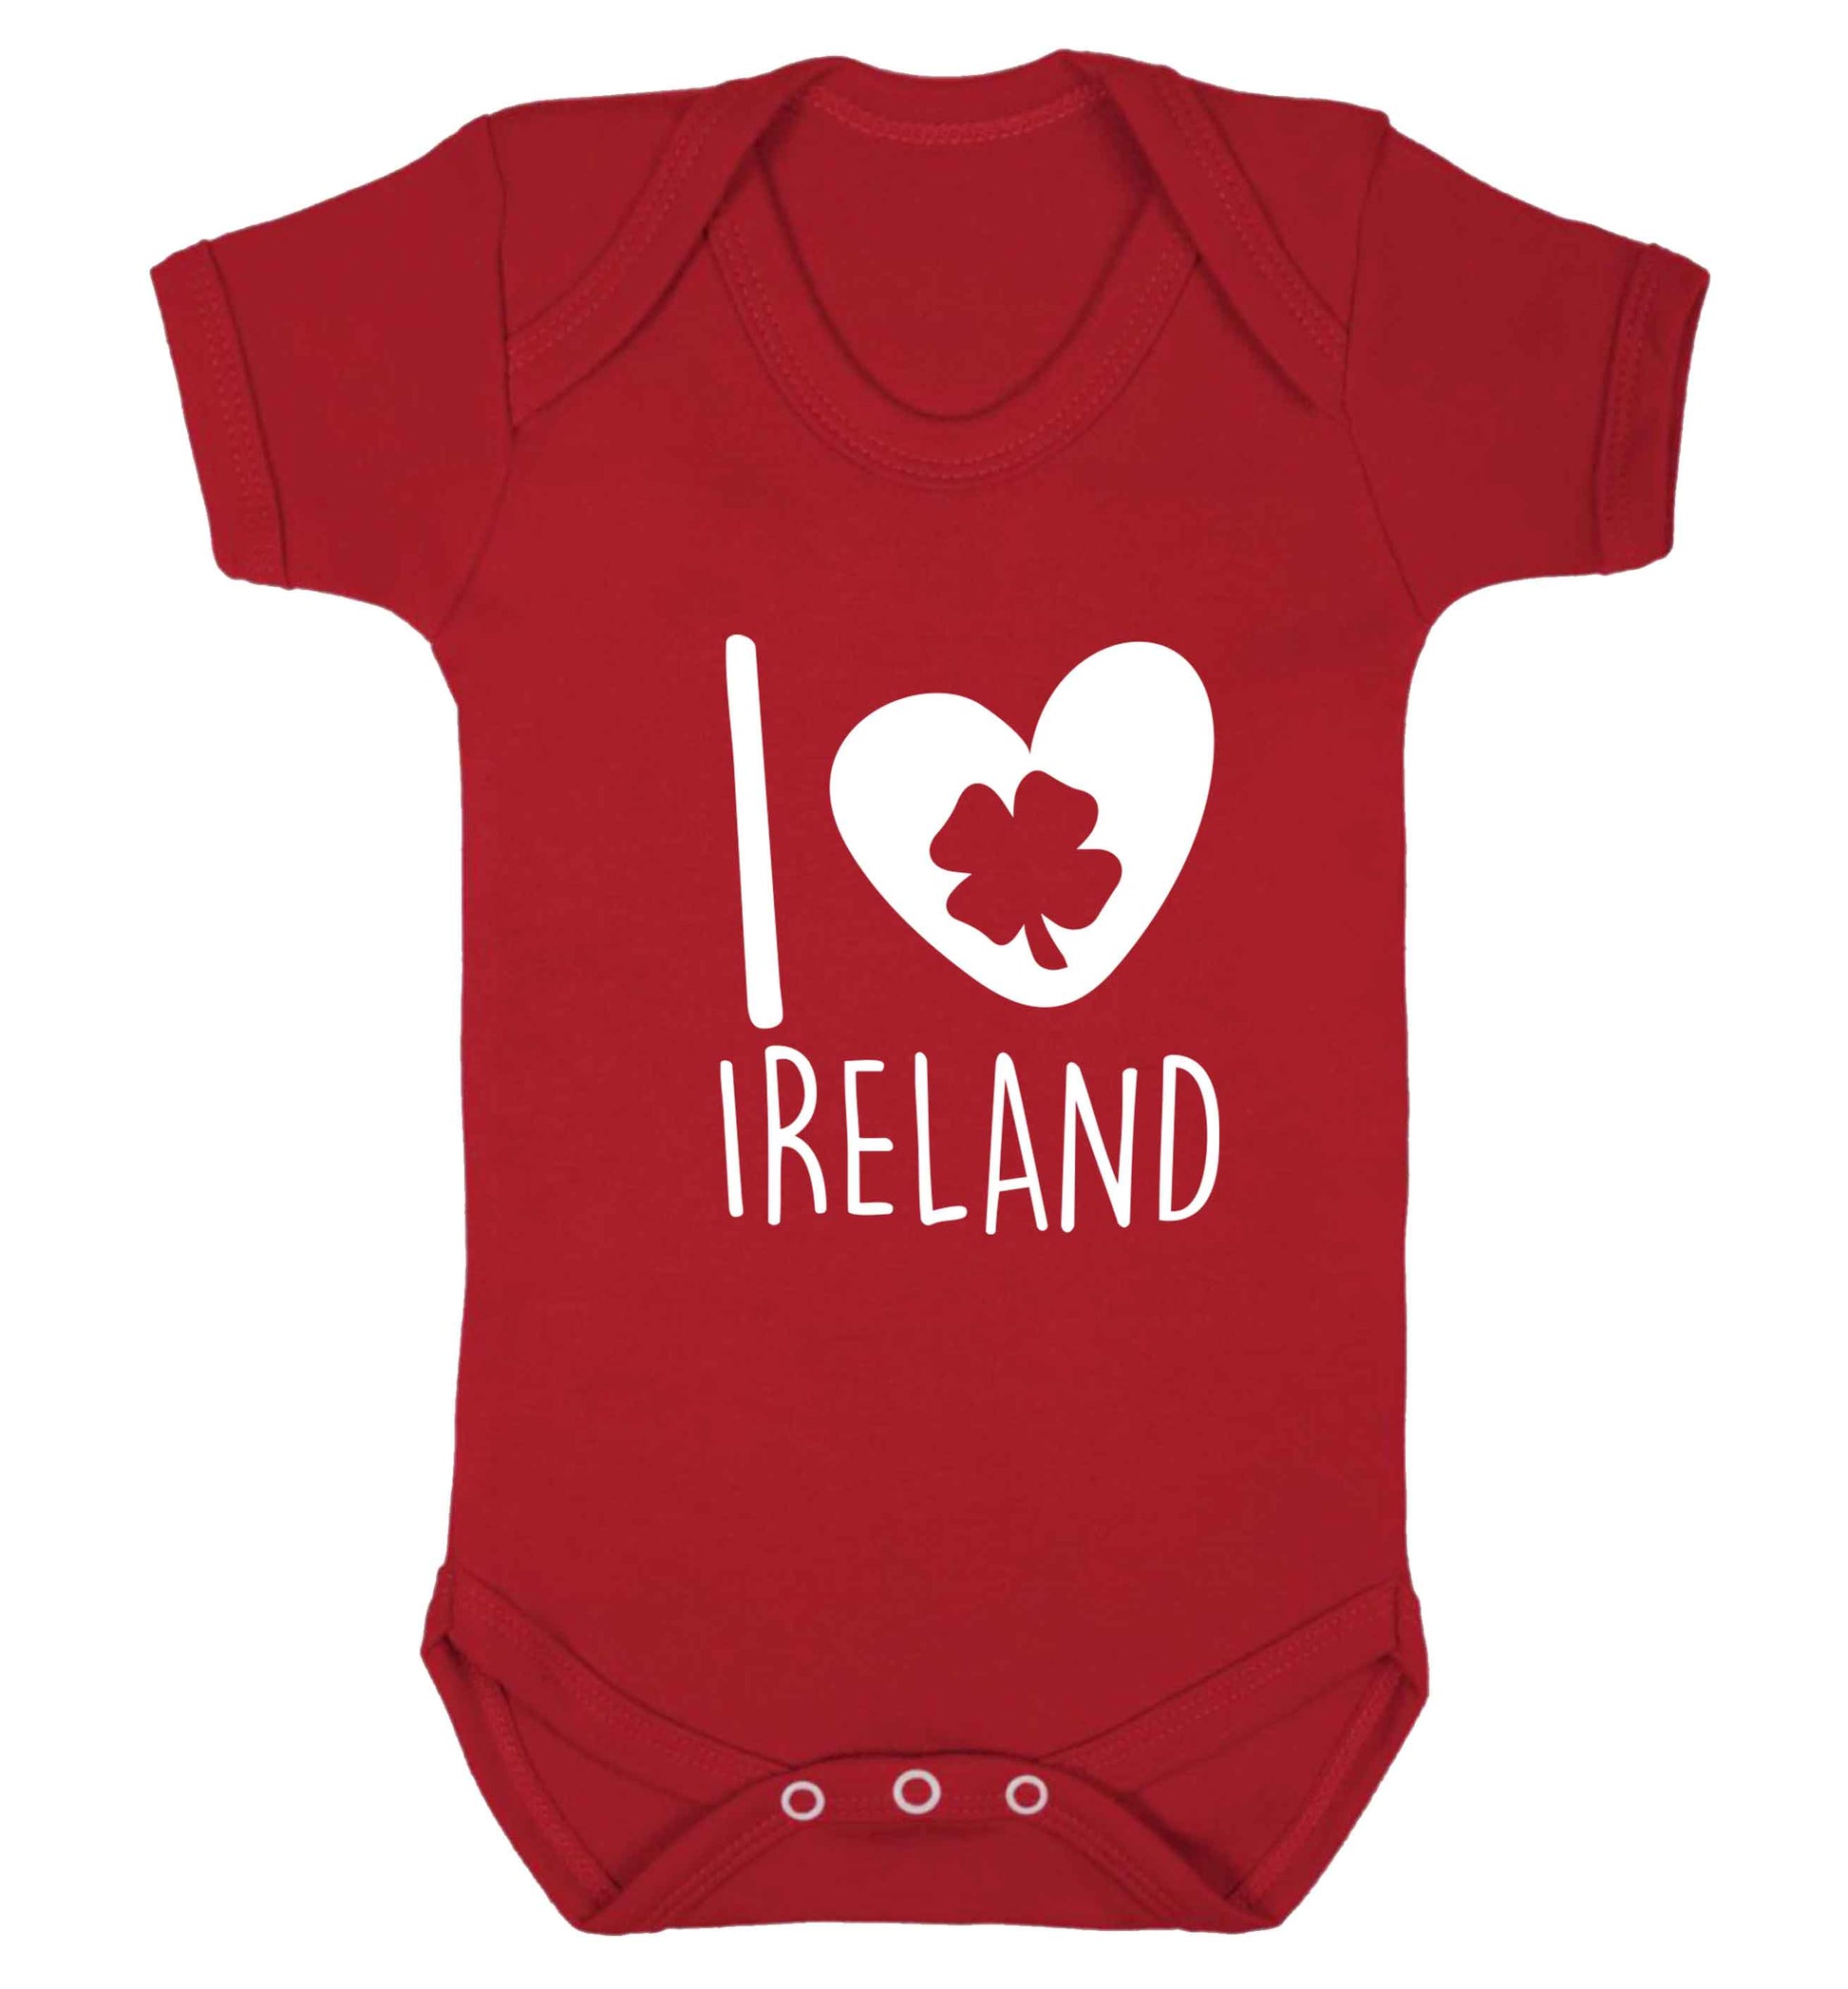 I love Ireland baby vest red 18-24 months